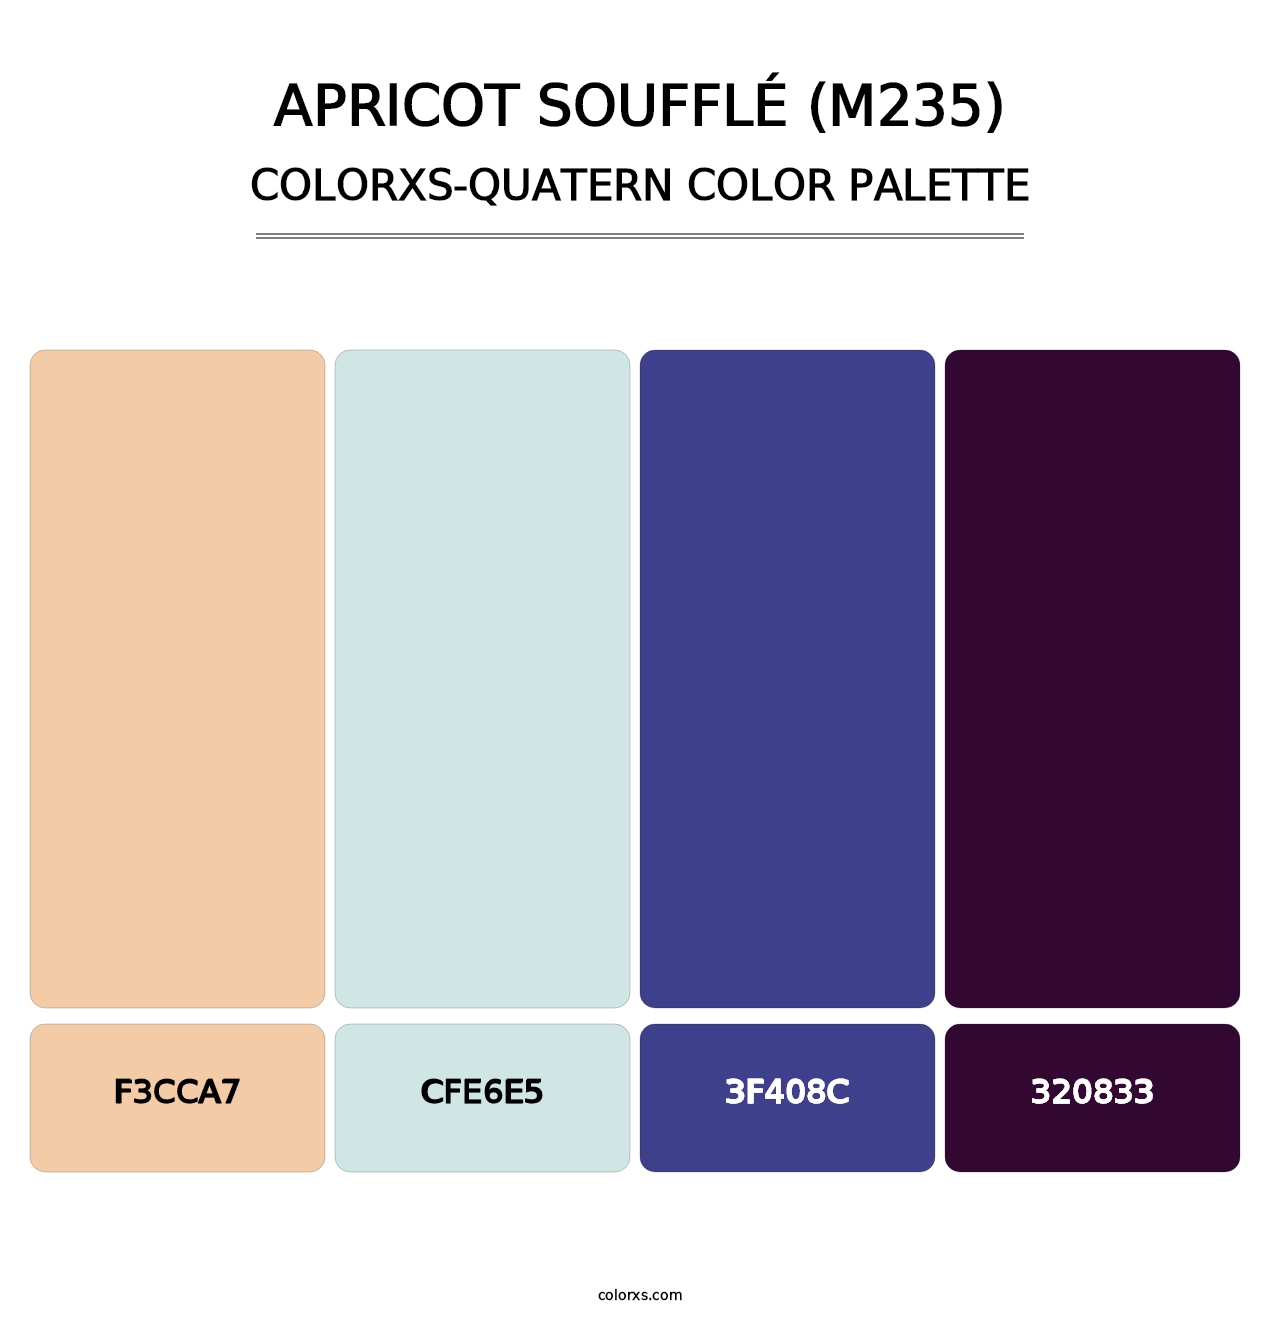 Apricot Soufflé (M235) - Colorxs Quatern Palette